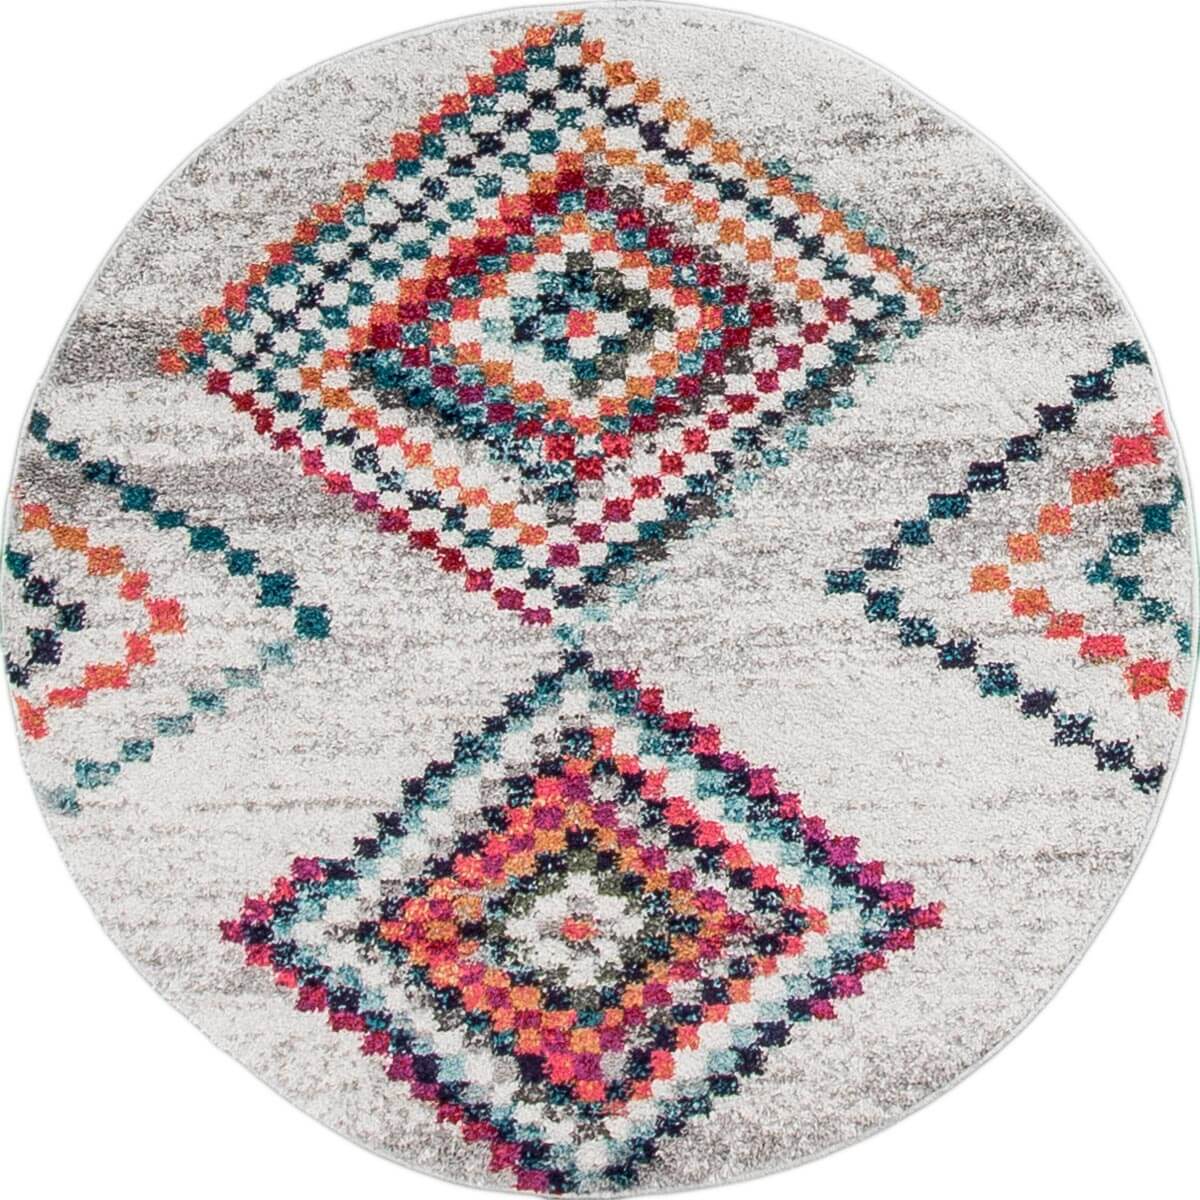 שטיח מיקונוס 02 קרם/אפור עגול | השטיח האדום